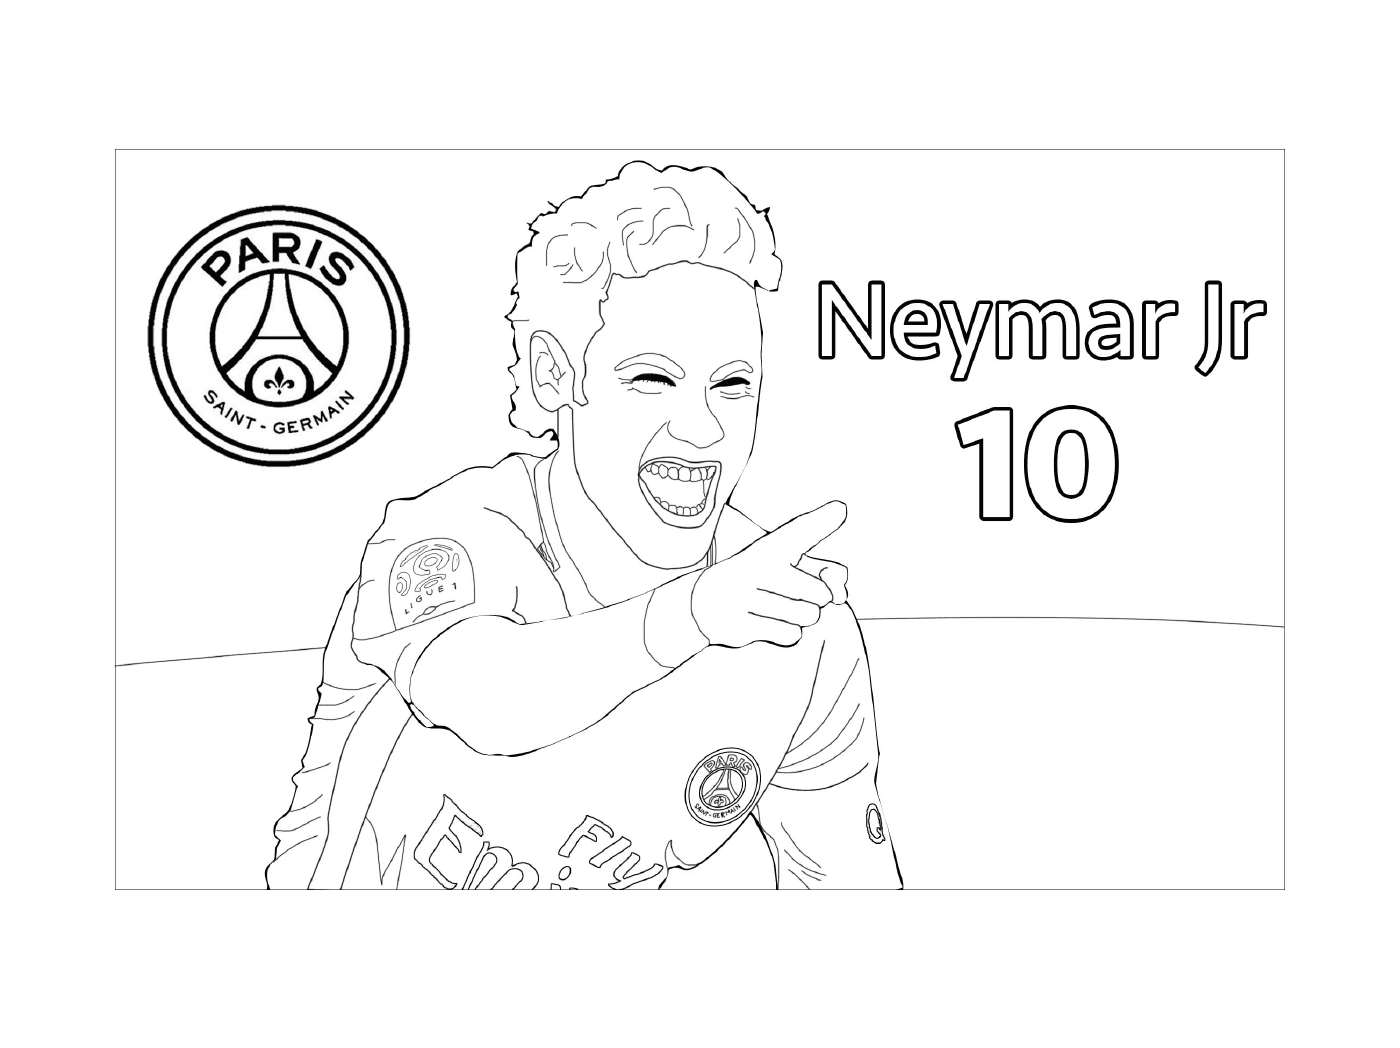  Neymar Jr, jogador de futebol do PSG 